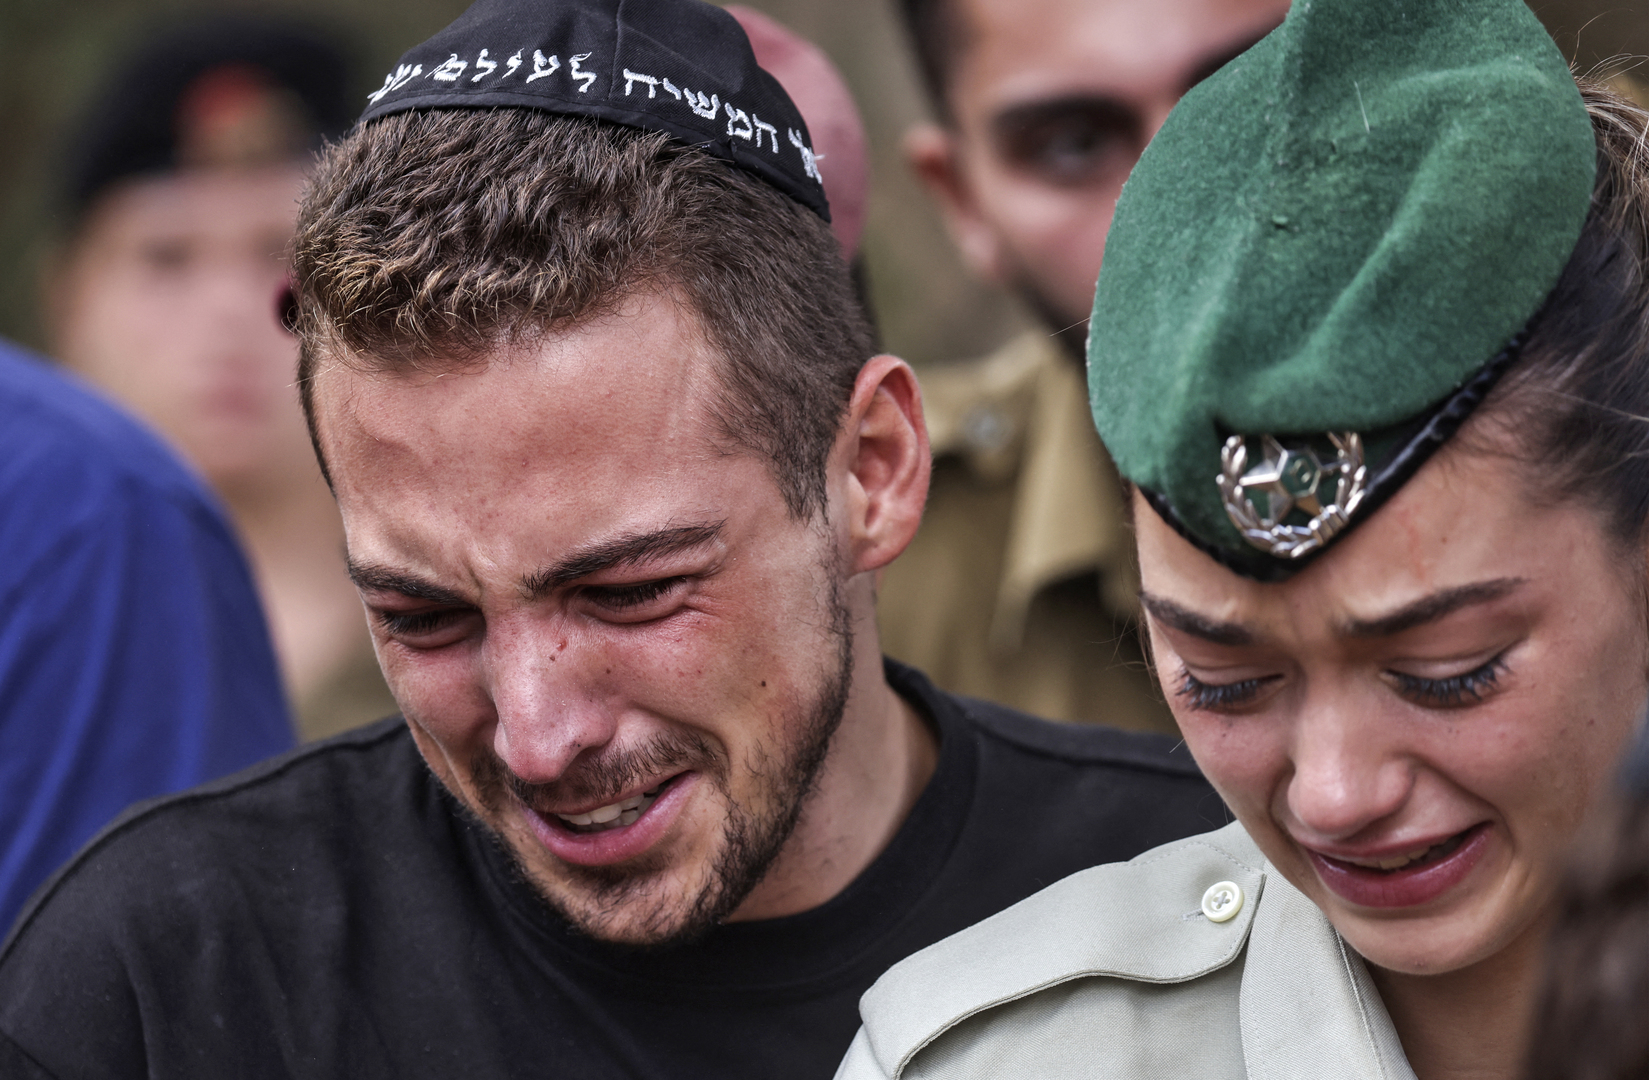 الوزير الإسرائيلي المتطرف سموتريتش: علينا أن نعترف بألم ورأس منحني.. لقد فشلنا